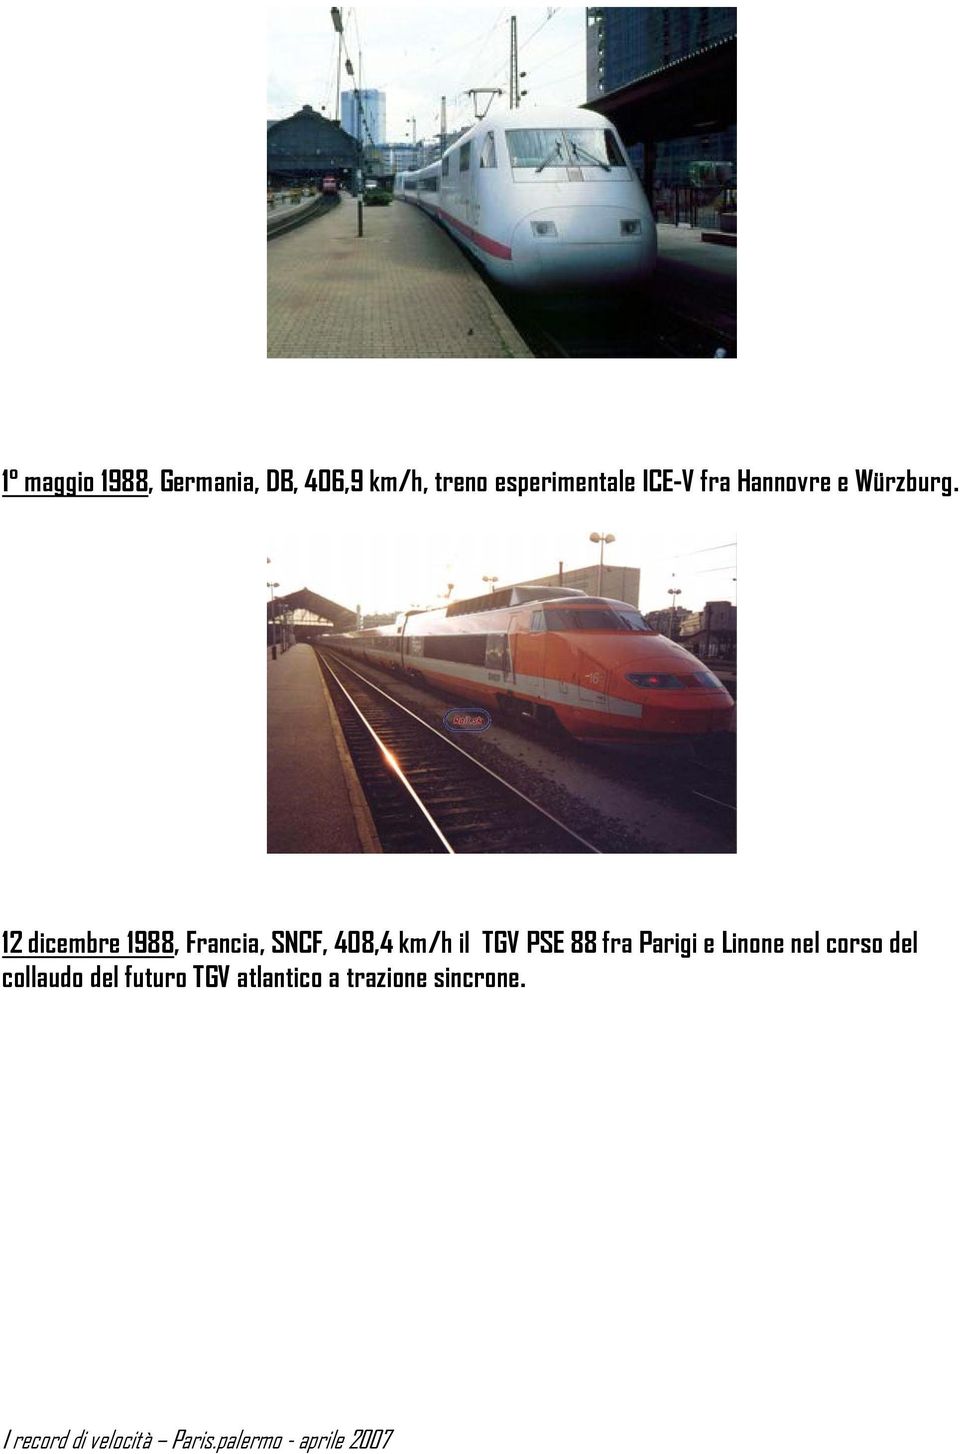 12 dicembre 1988, Francia, SNCF, 408,4 km/h il TGV PSE 88